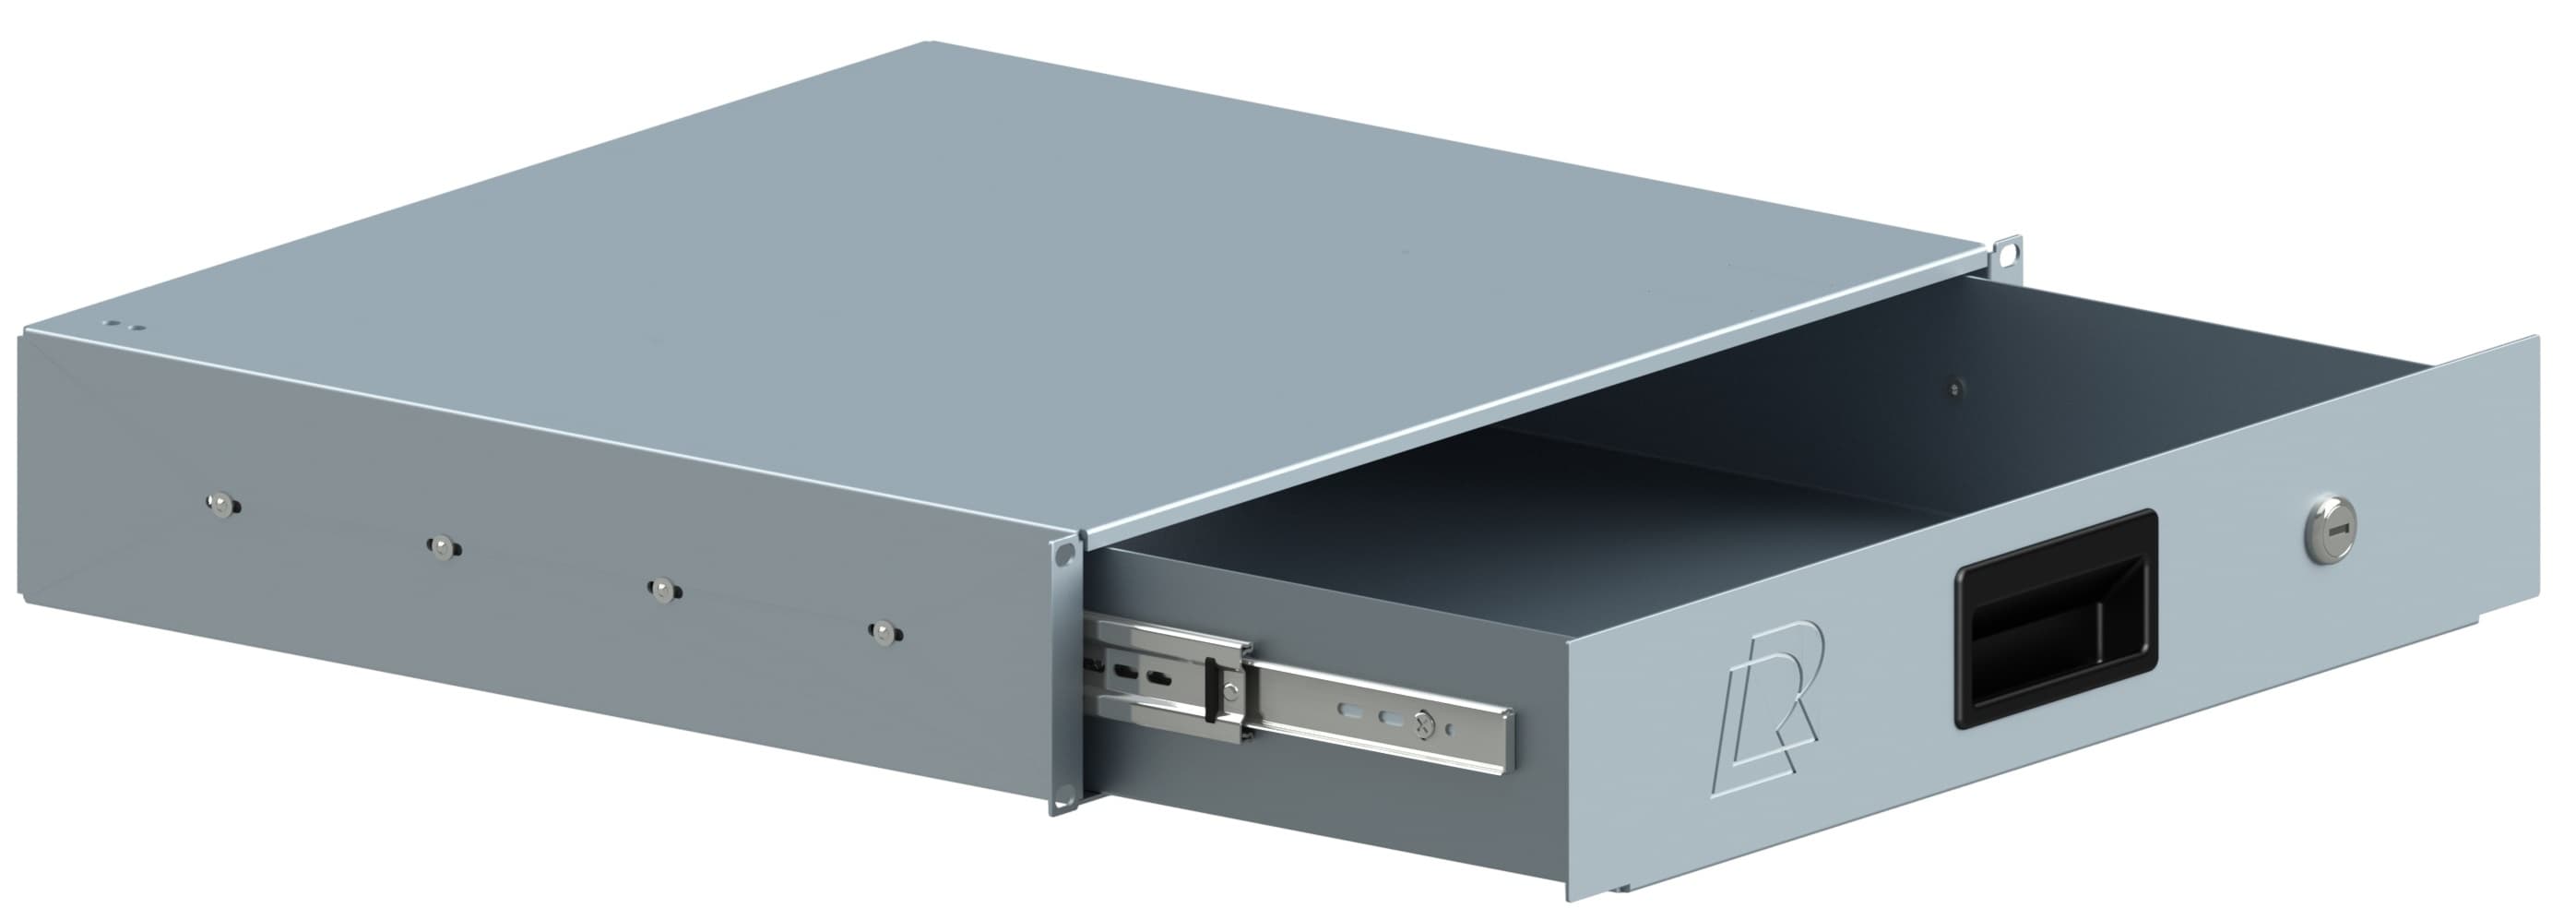 Ящик для документов 2U, глубина 415мм, цвет серый, RUSRACK